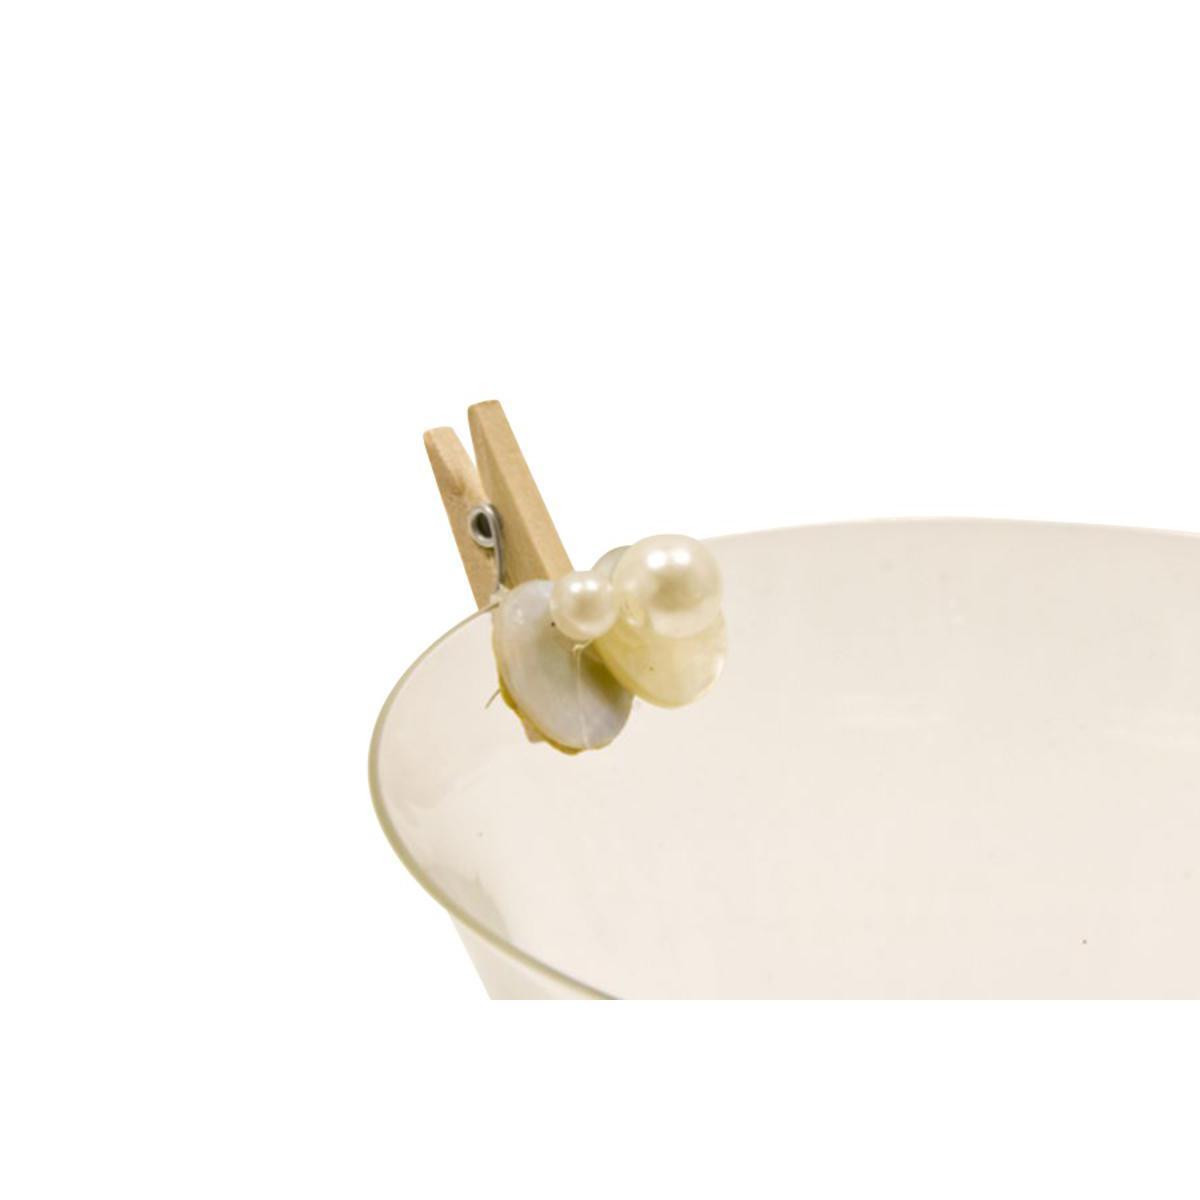 Lot de 6 perles nacrées sur pince - Bois et plastique - 2,5 x 2,5 cm - Blanc ivoire